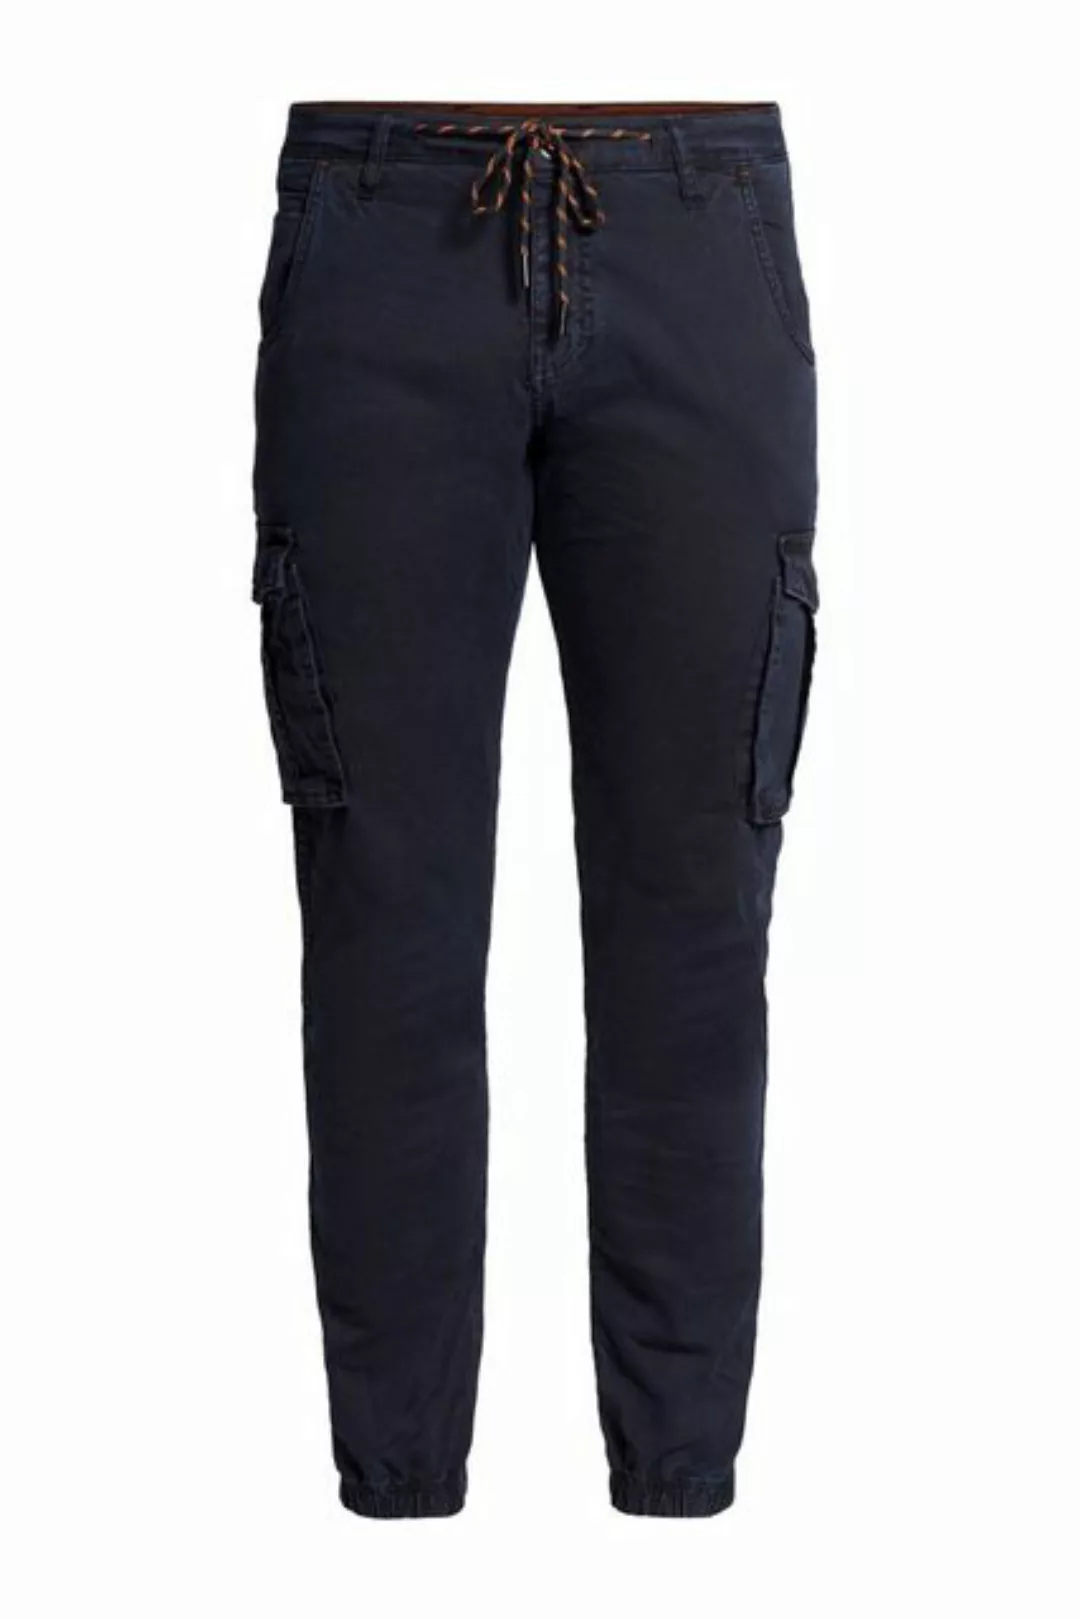 Zhrill 5-Pocket-Jeans Cargo Hose MICHA Black angenehmer Tragekomfort günstig online kaufen